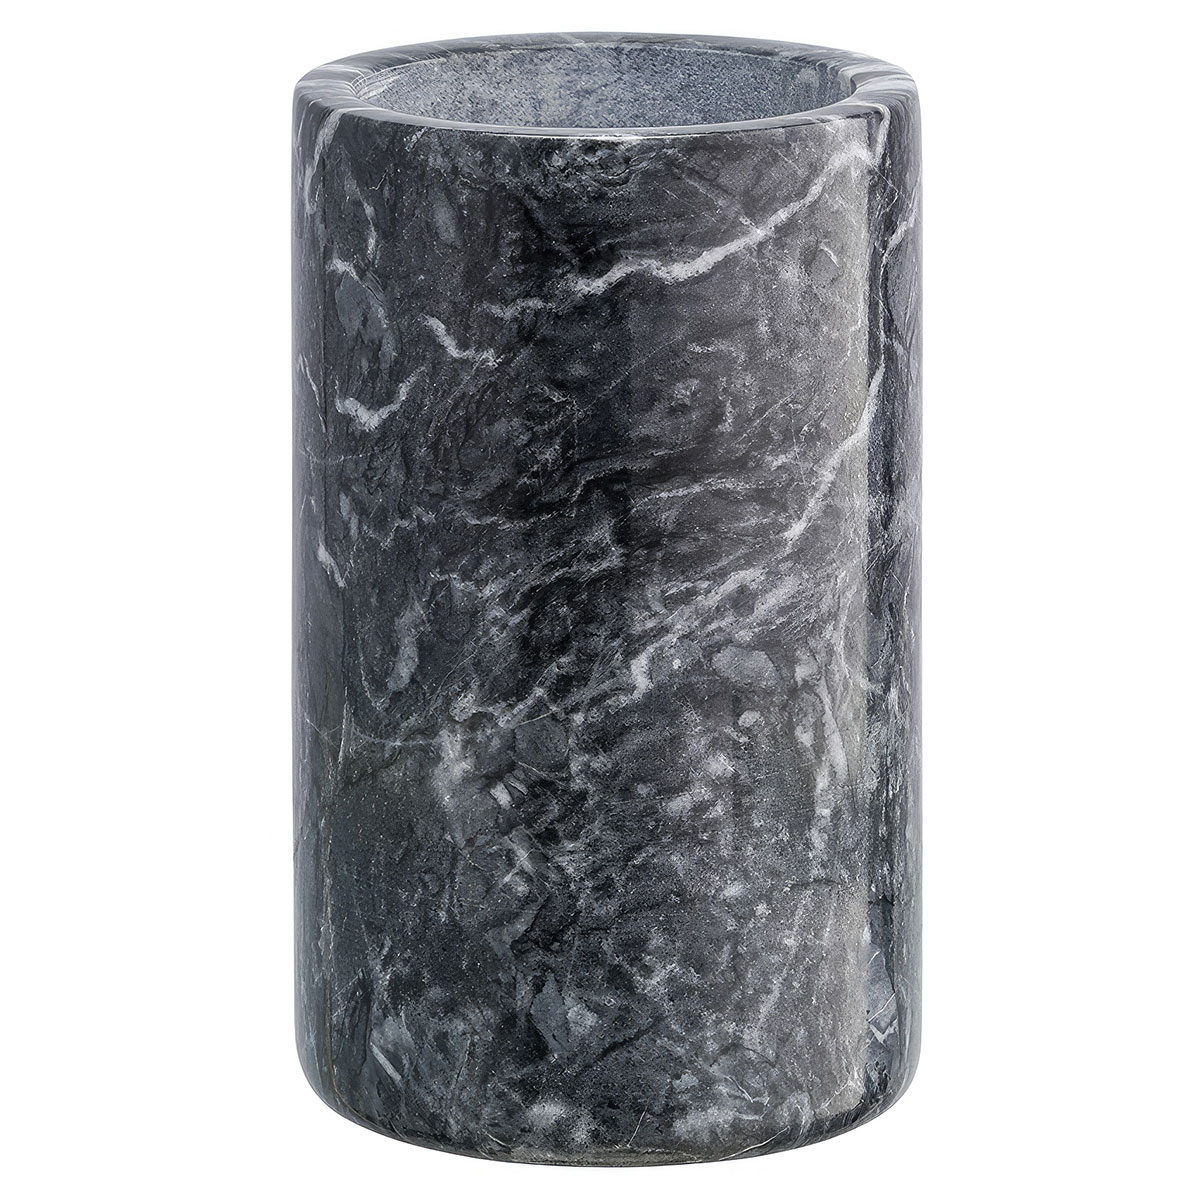 Органайзер для кухонных принадлежностей Liberty Jones Marm, черный мрамор средство для очистки кухонных поверхностей из натурального камня hg